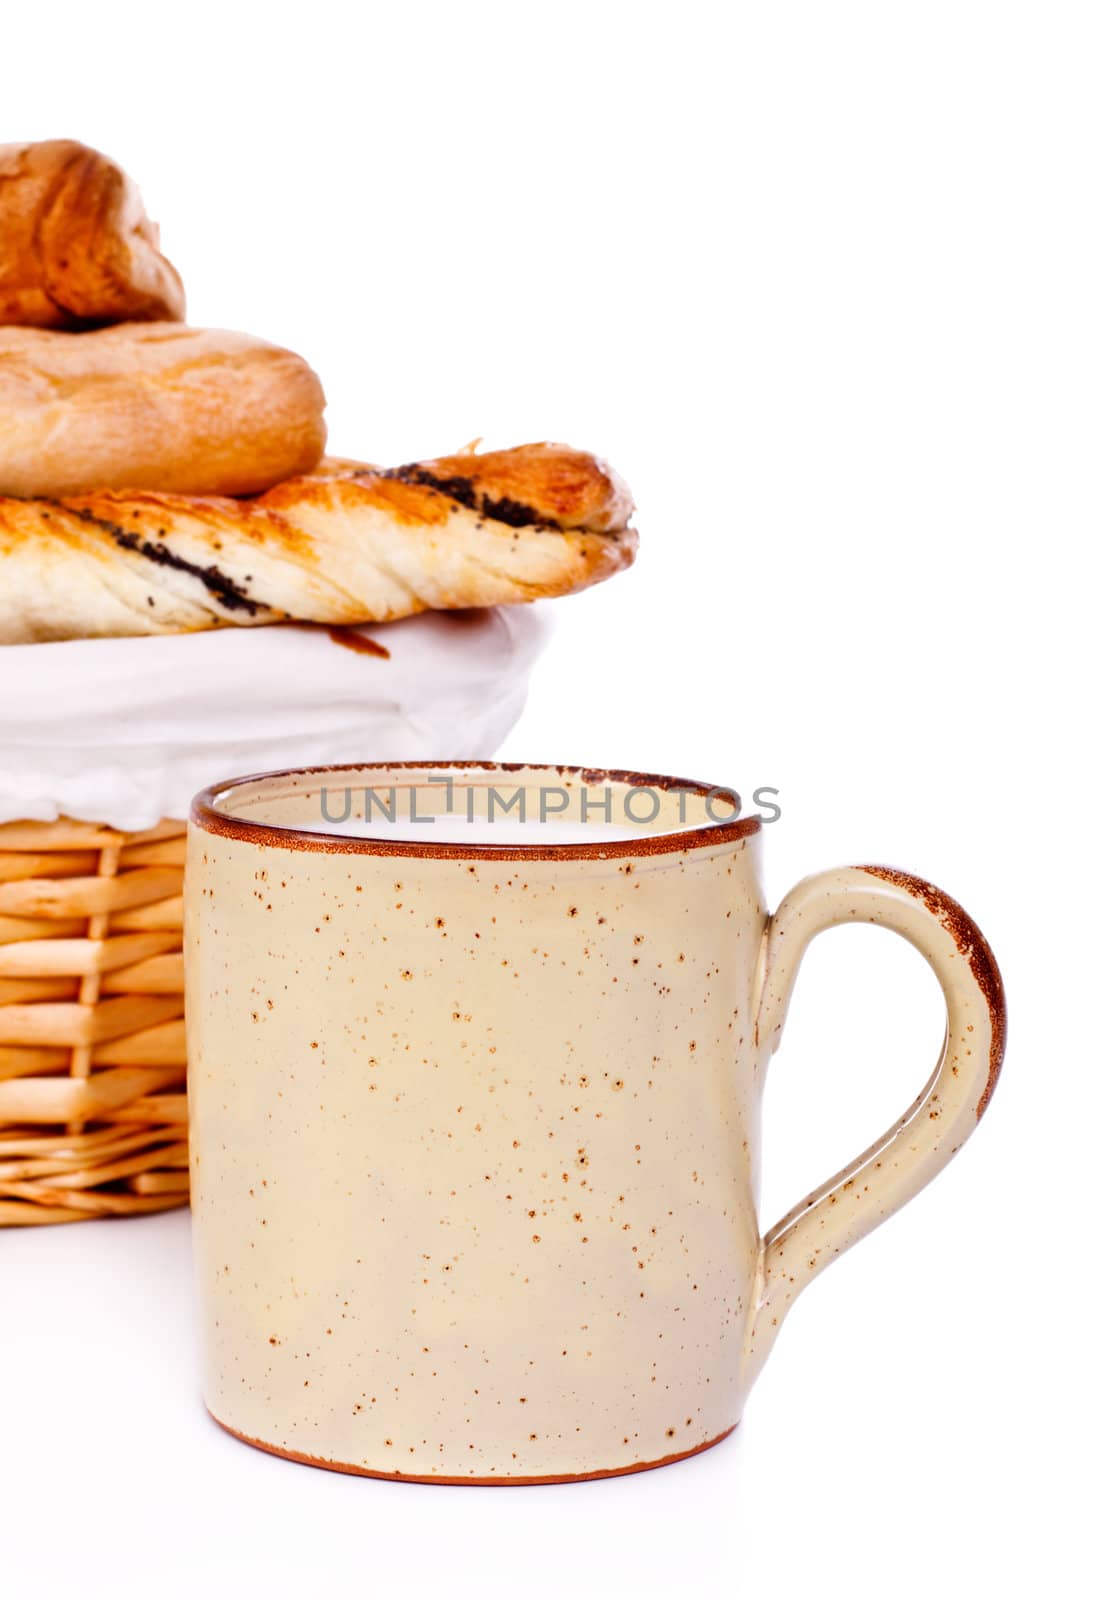 basket with buns and mug of milk on white